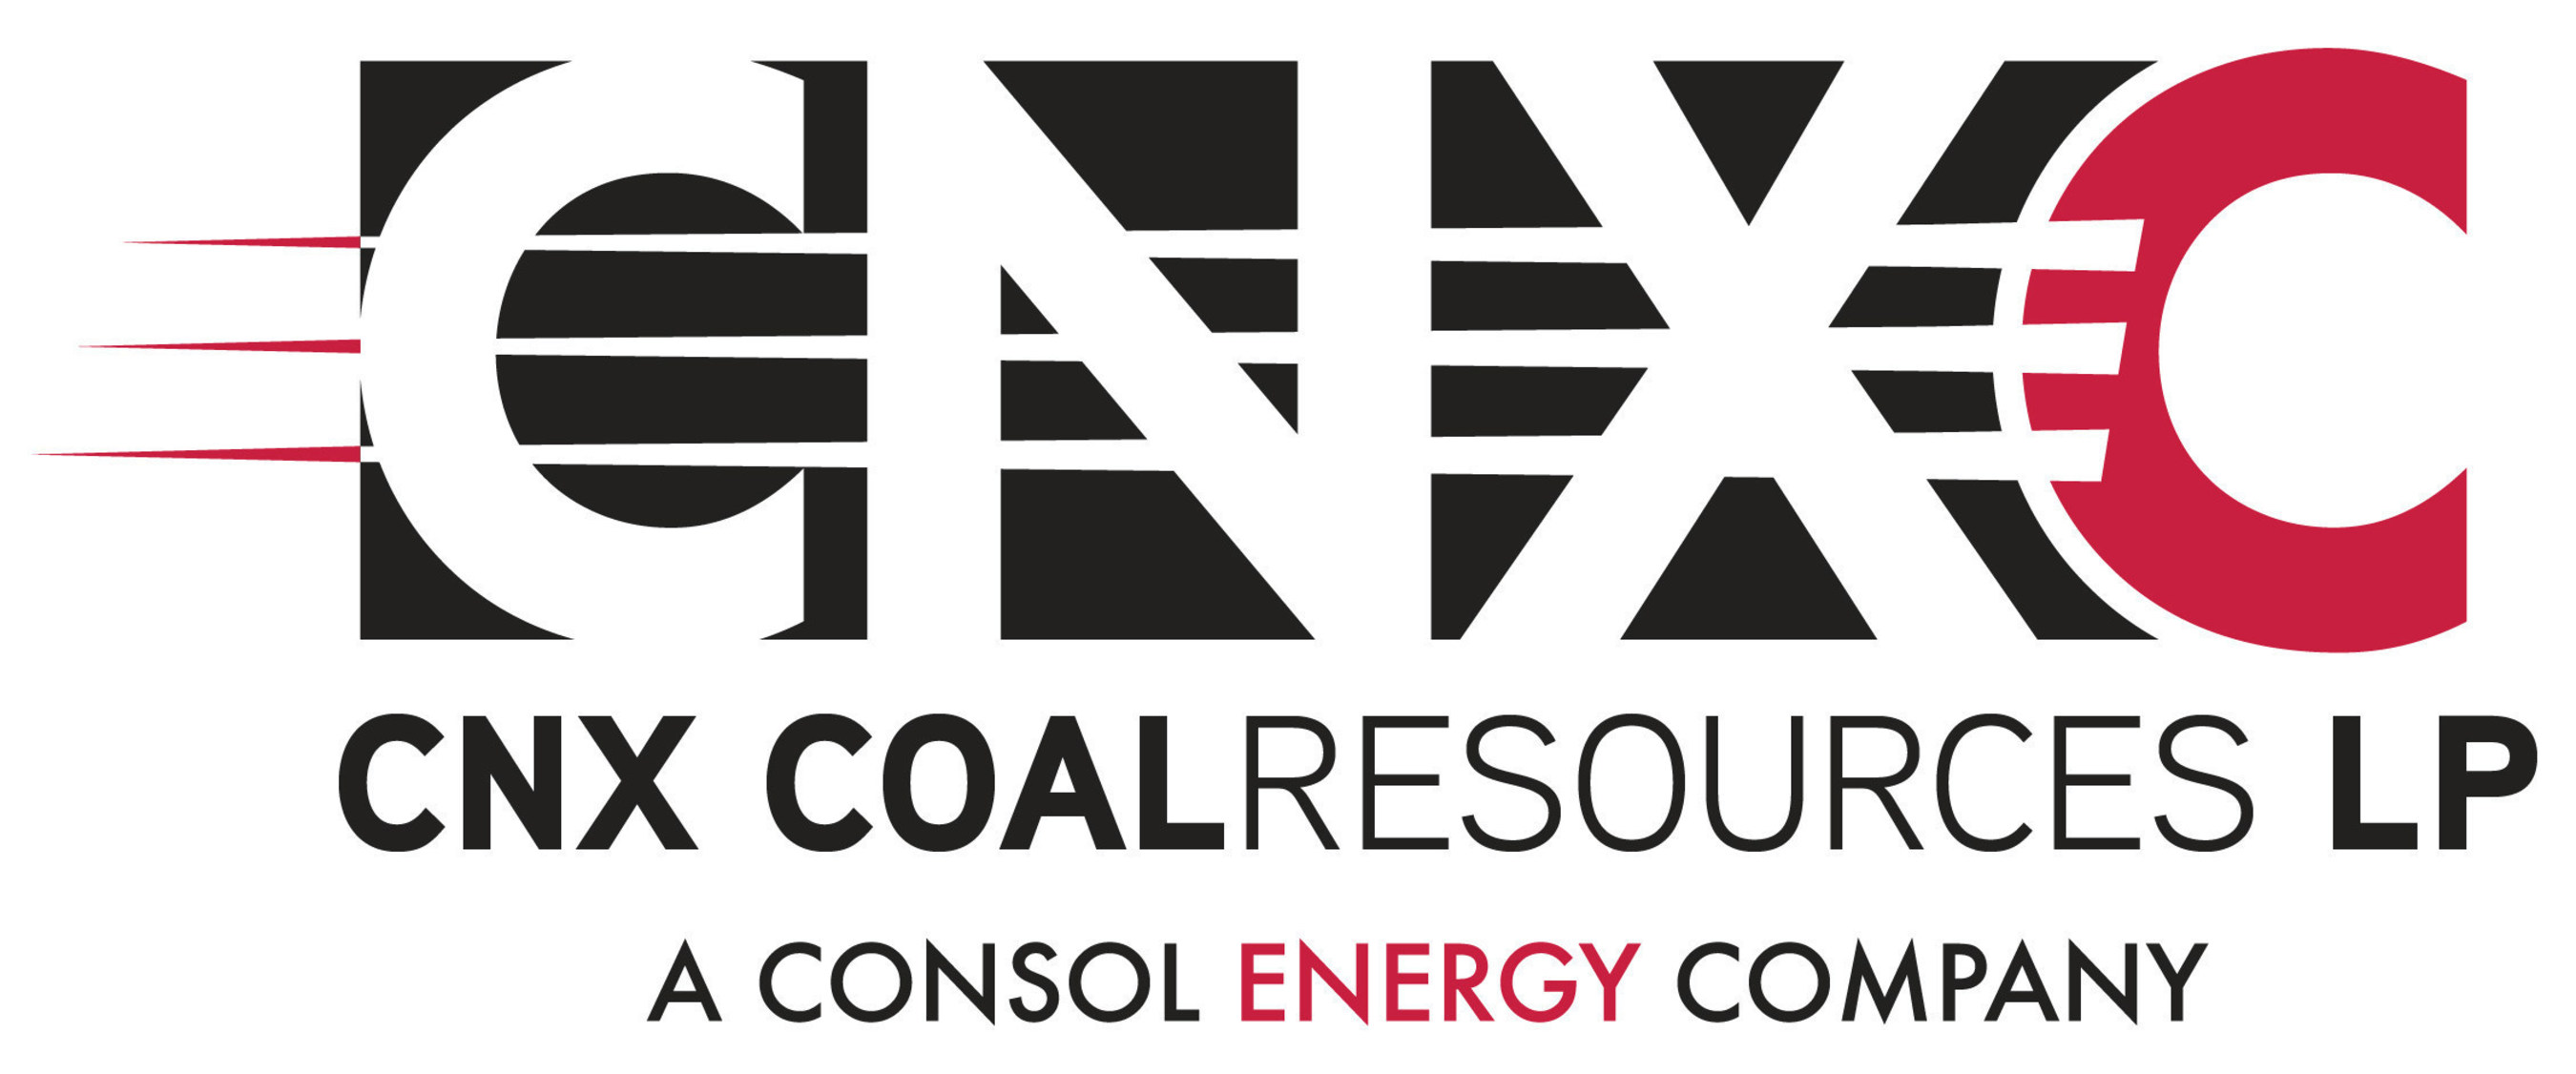 CNX Coal Resources LP